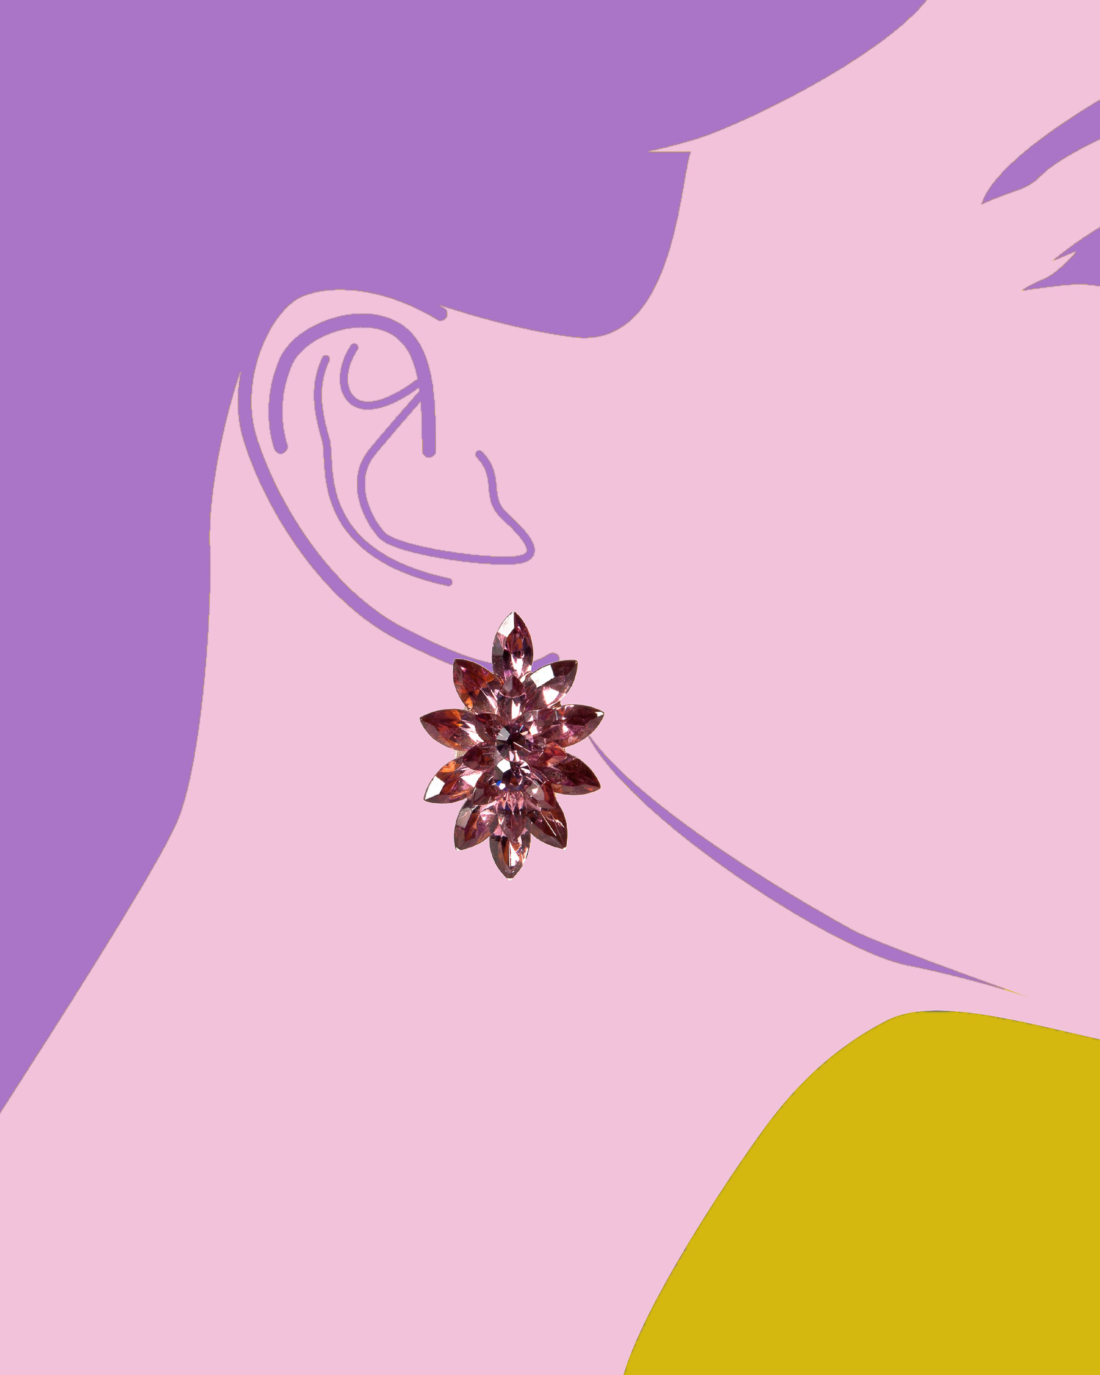 Vintage Purple Diamanté Marquis Cut Earrings, circa 1980’s